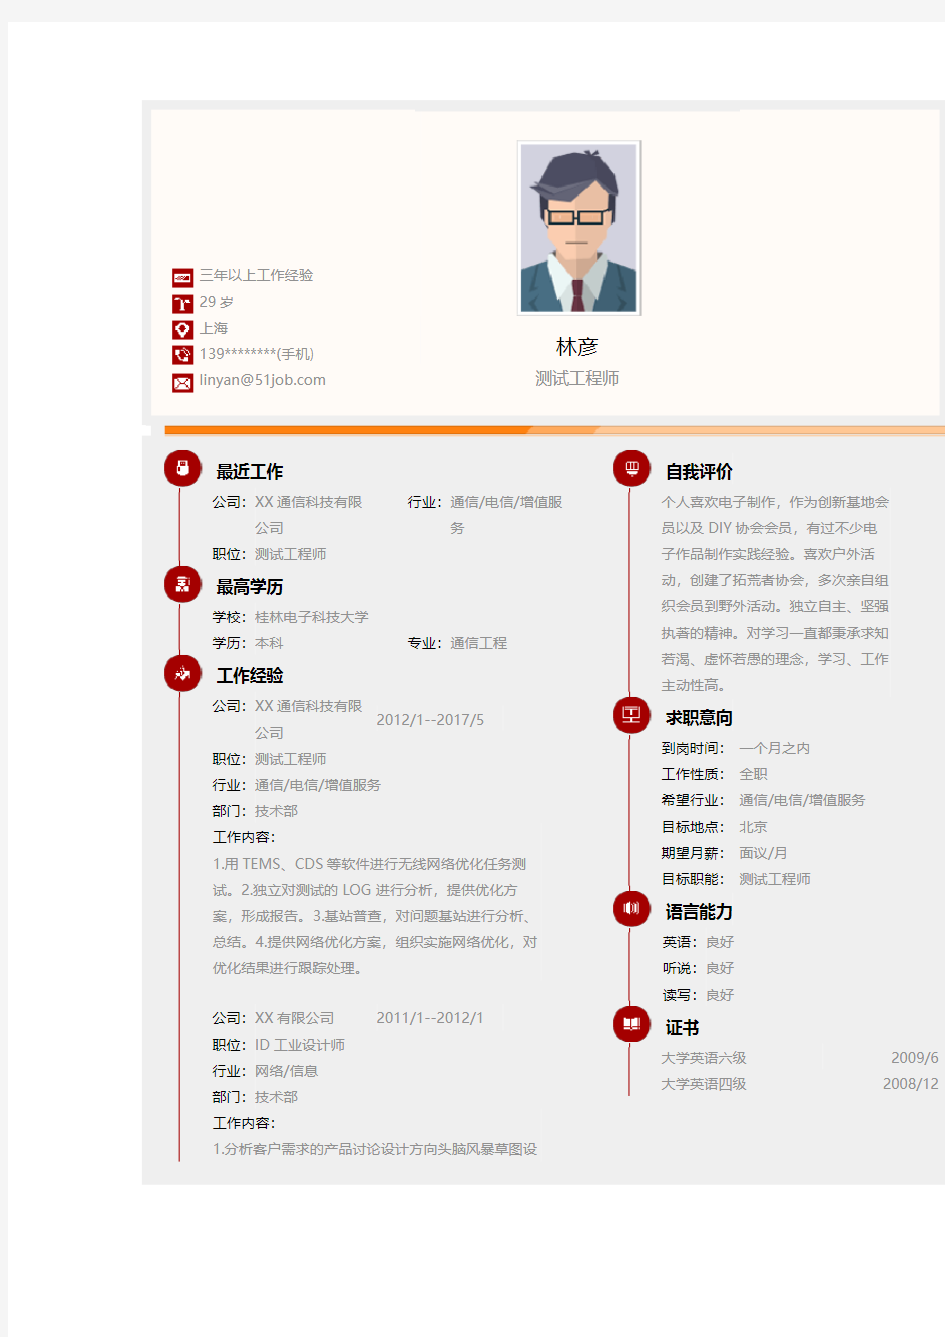 桂林电子科技大学优秀个人简历